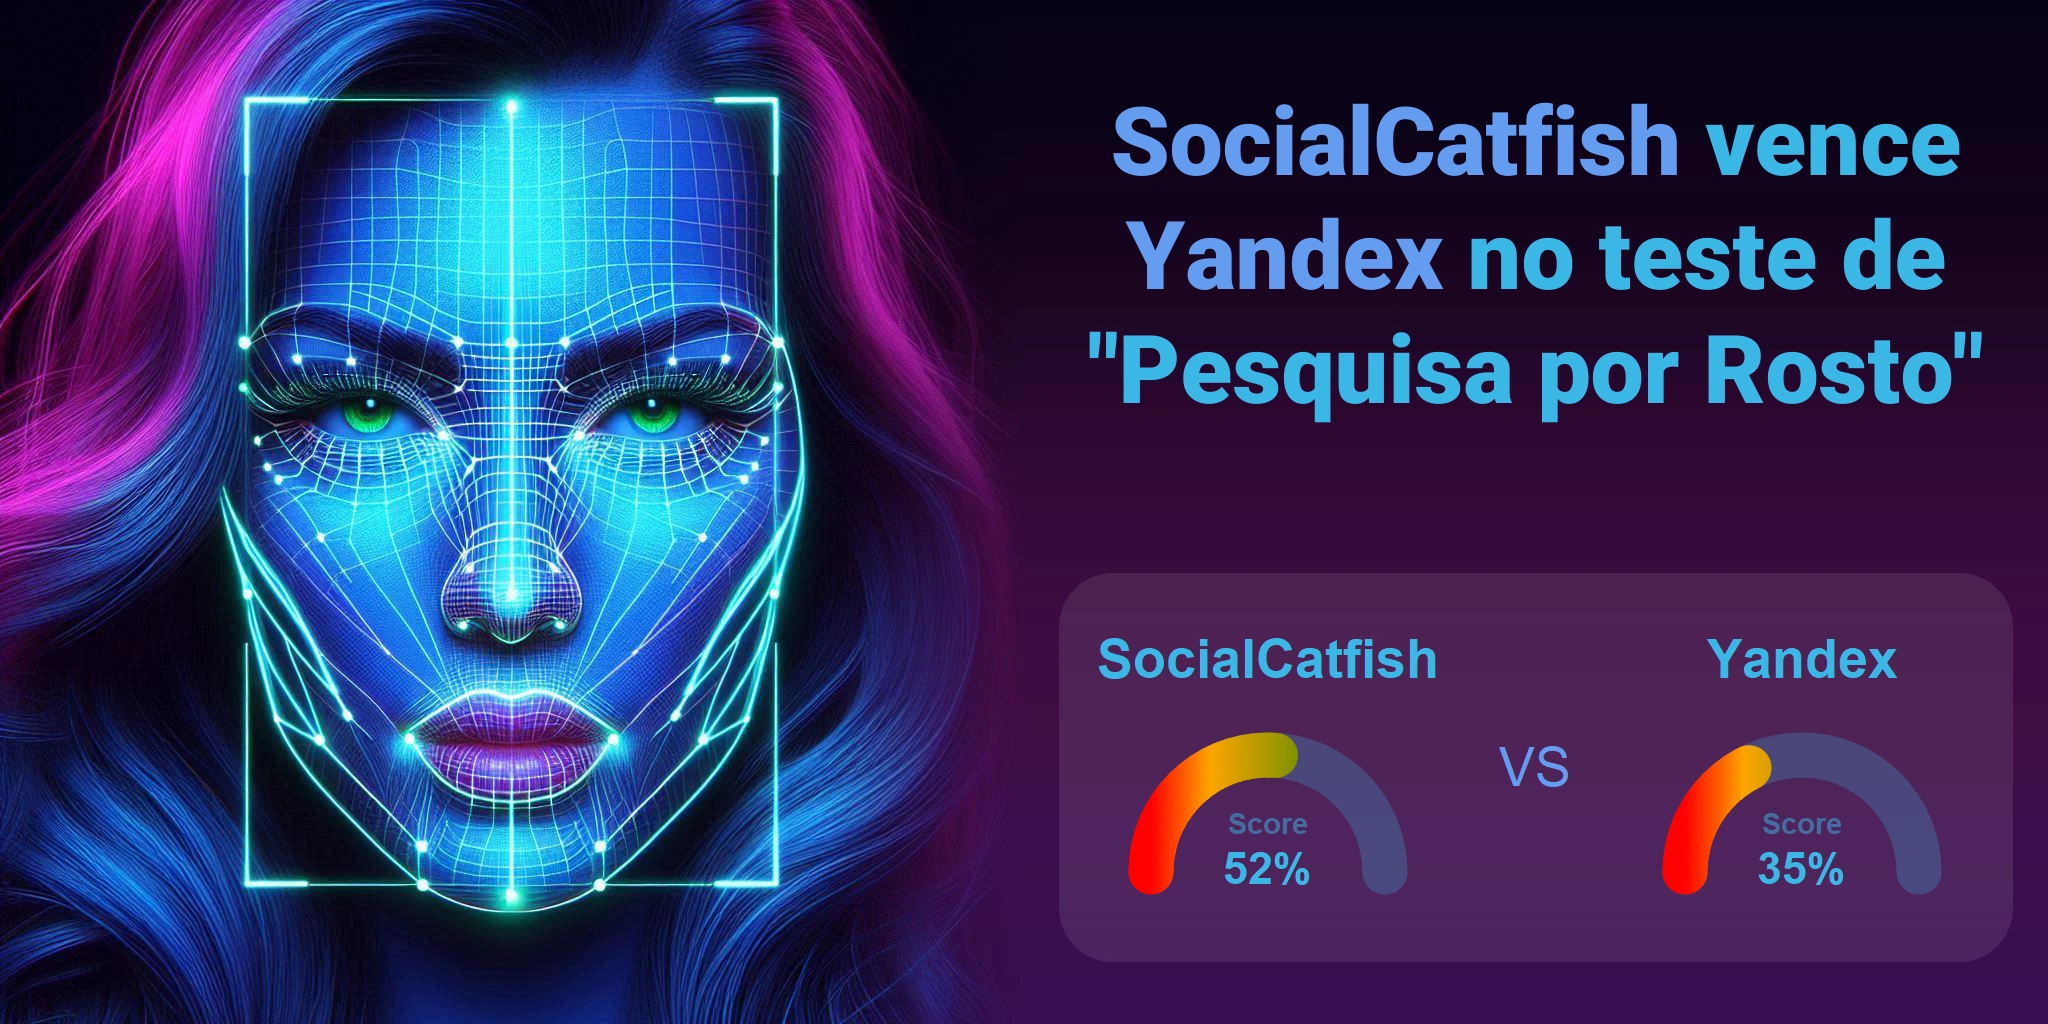 Qual é melhor para busca de rostos: <br>SocialCatfish ou Yandex?